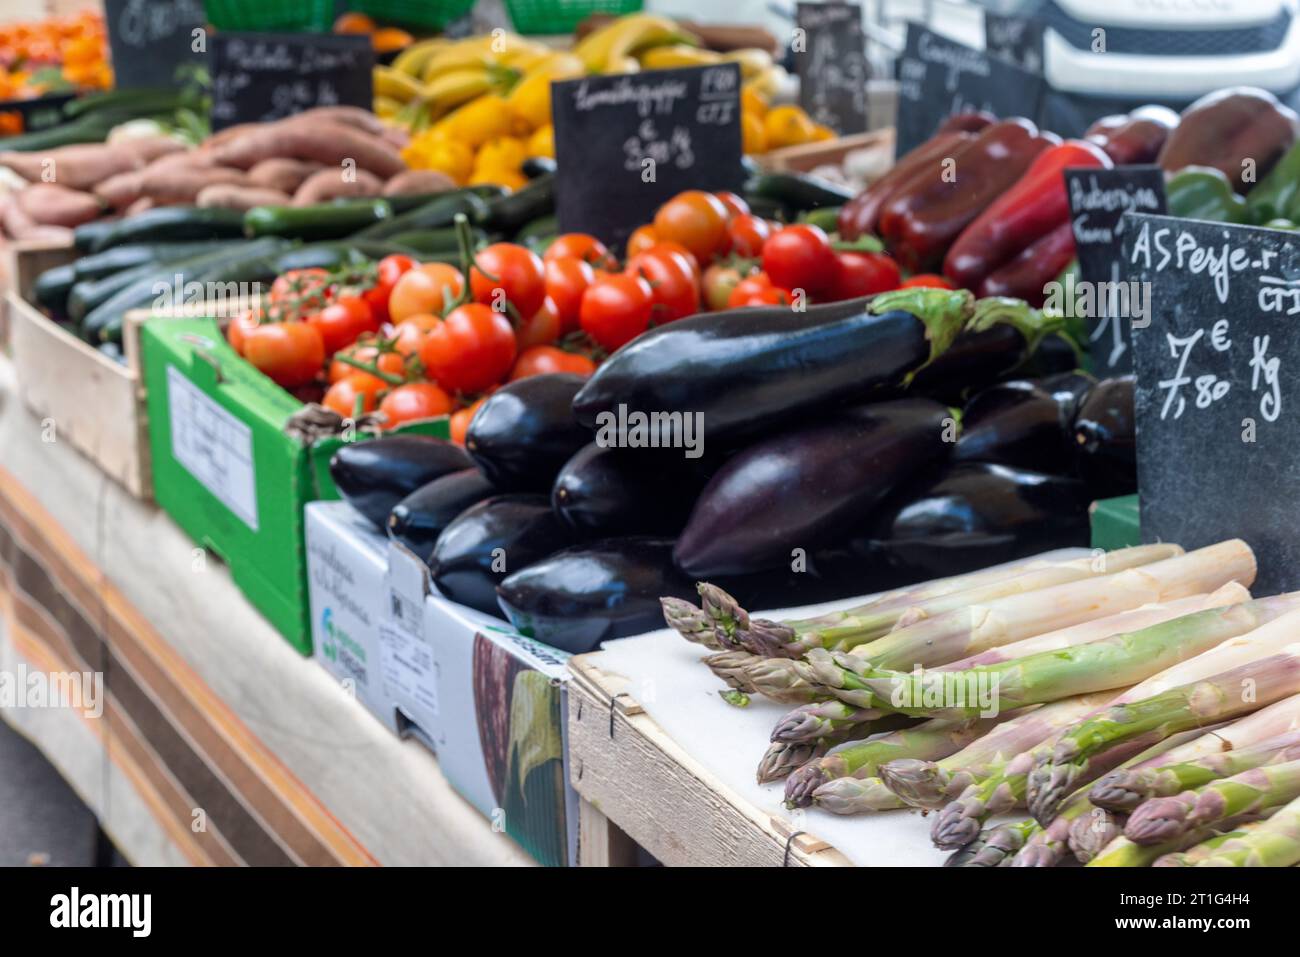 Asperges, aubergines, tomates rouges et autres légumes frais exposés à la vente au marché en plein air d'Arles, Provence, sud de la France. Banque D'Images